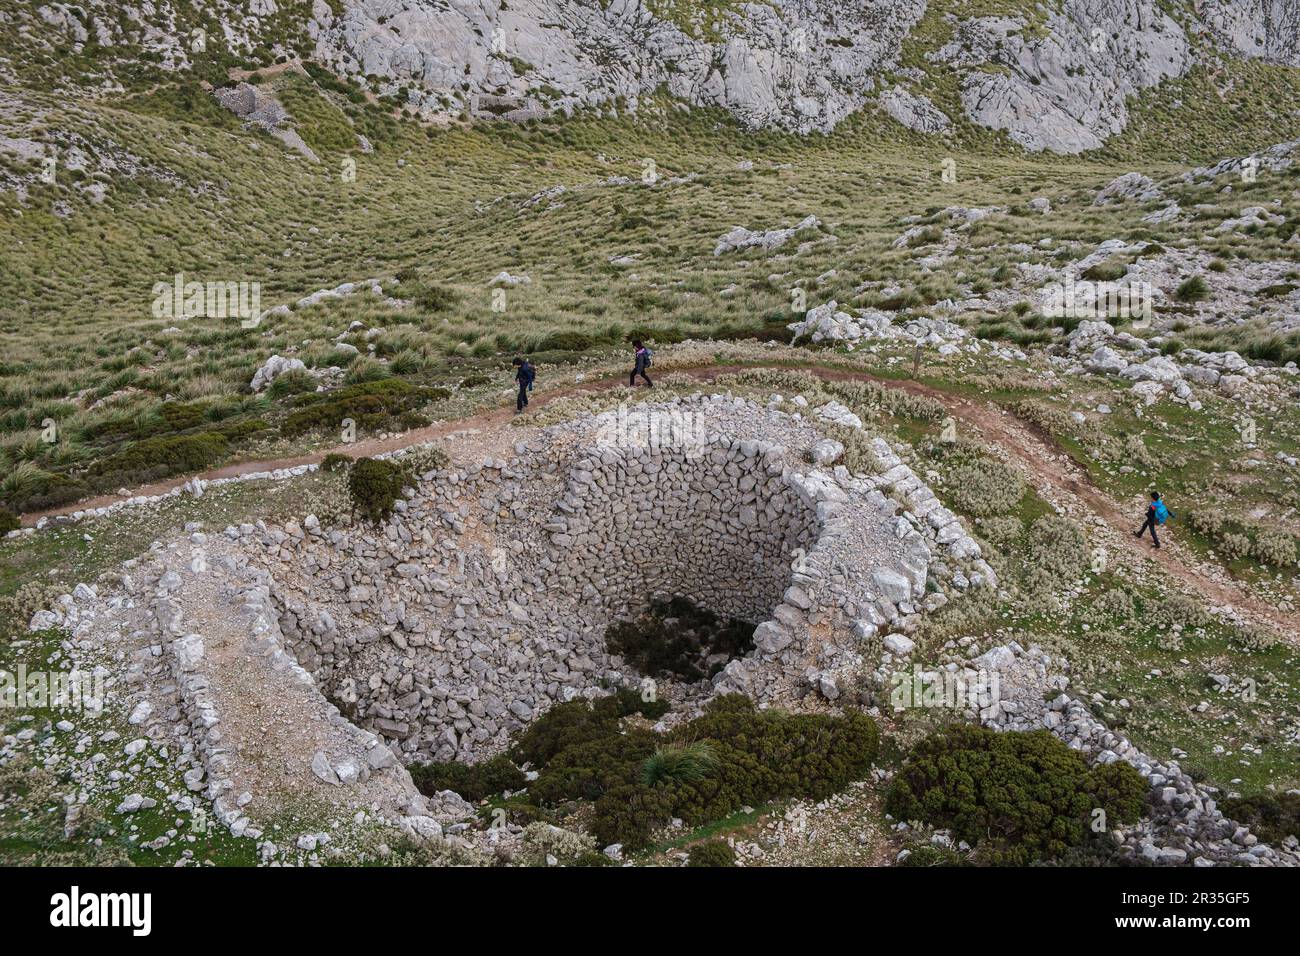 Cases de neu, deposito scavato alla fine del 17 ° secolo d.C. C., ai piedi del puig d'en Galileu, Escorca, Maiorca, Isole Baleari, Spagna. Foto Stock